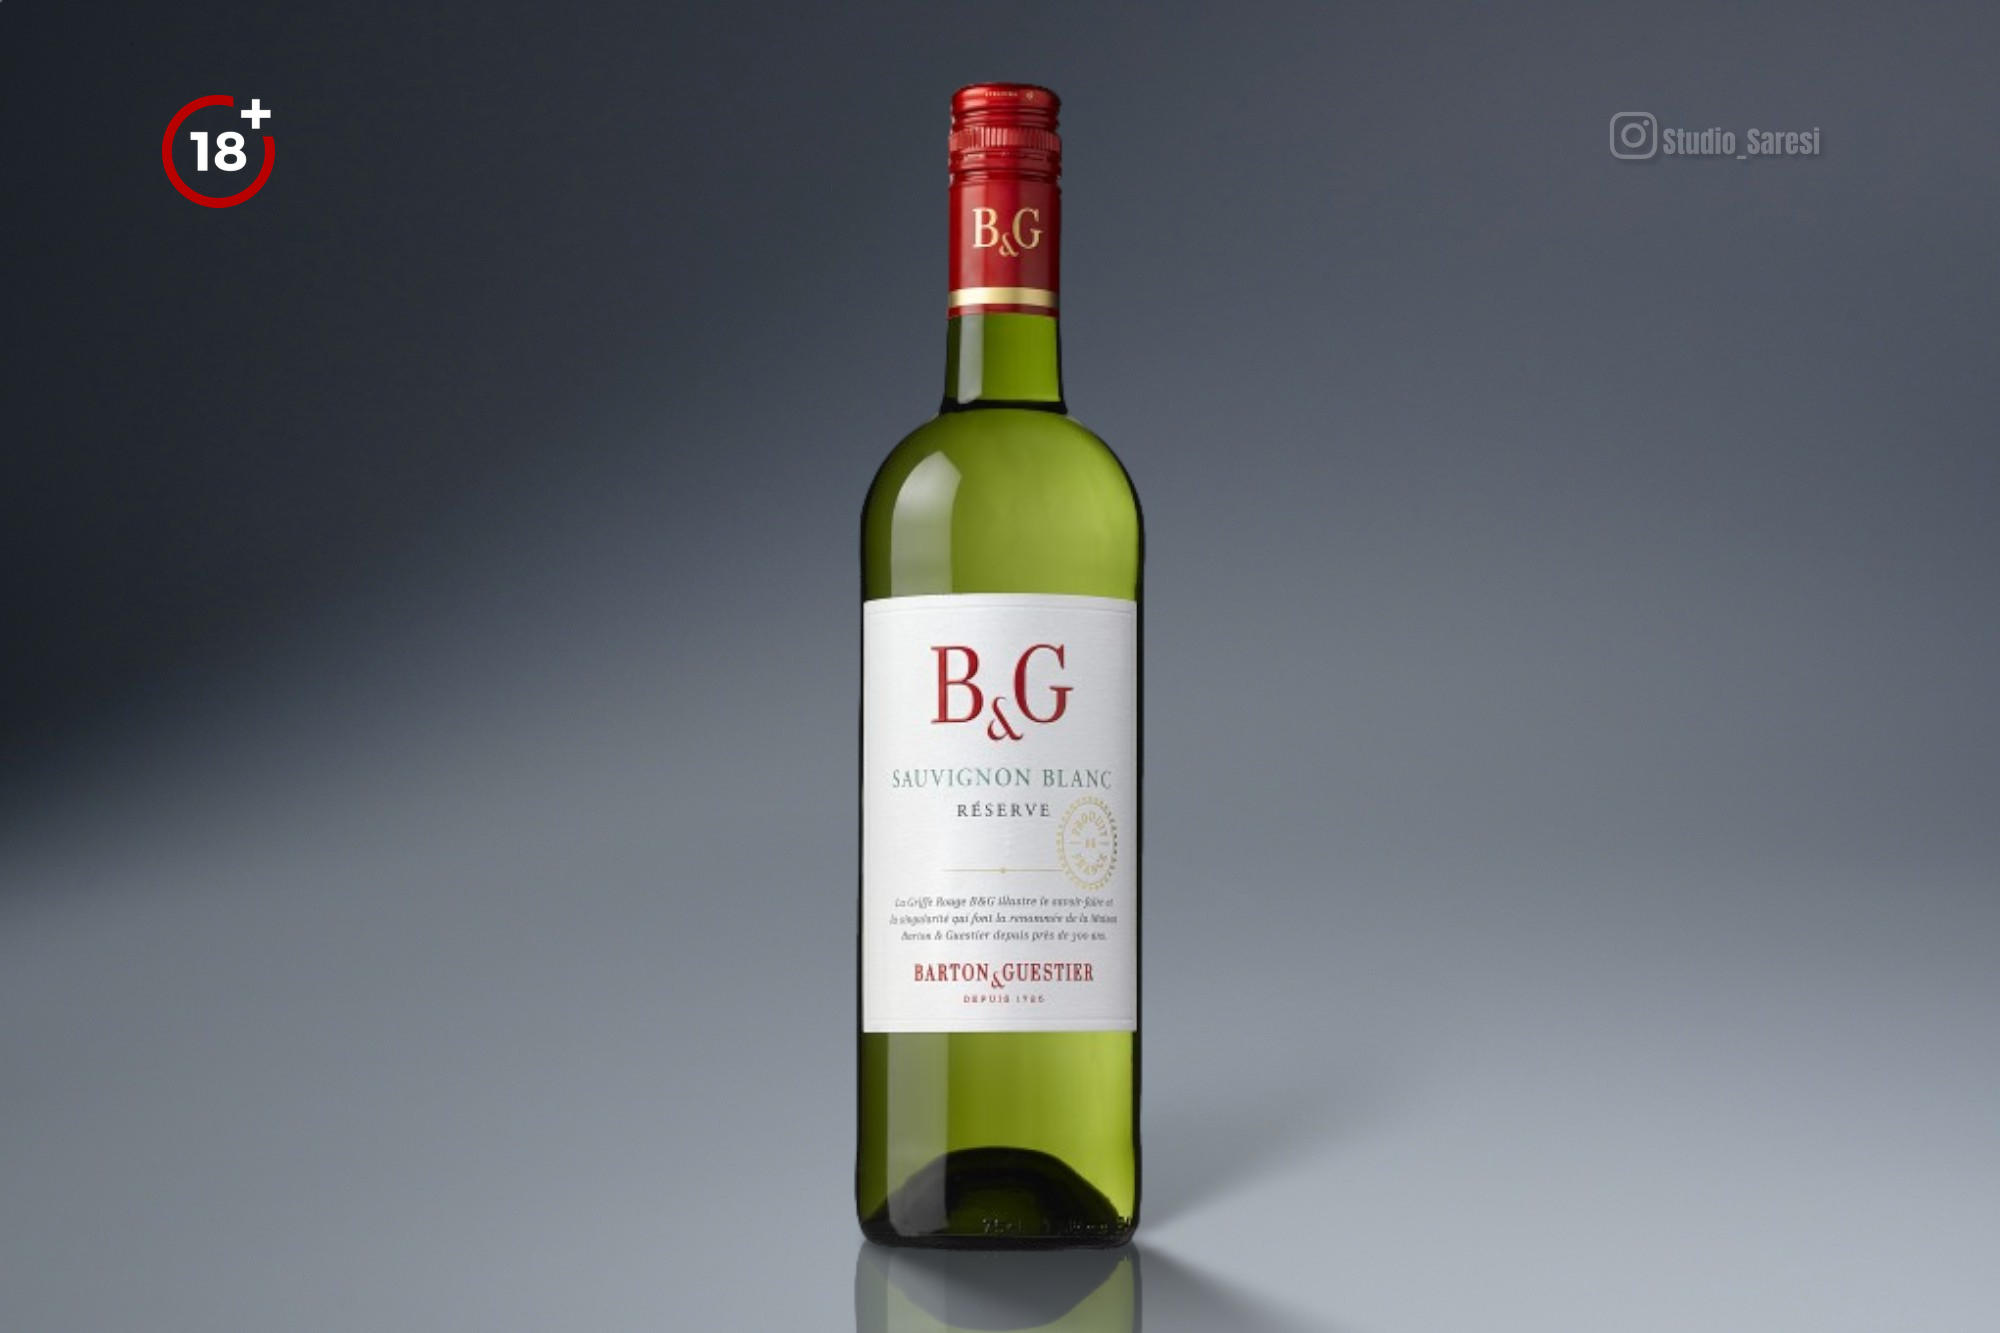 Barton & Guestier Sauvignon Blanc